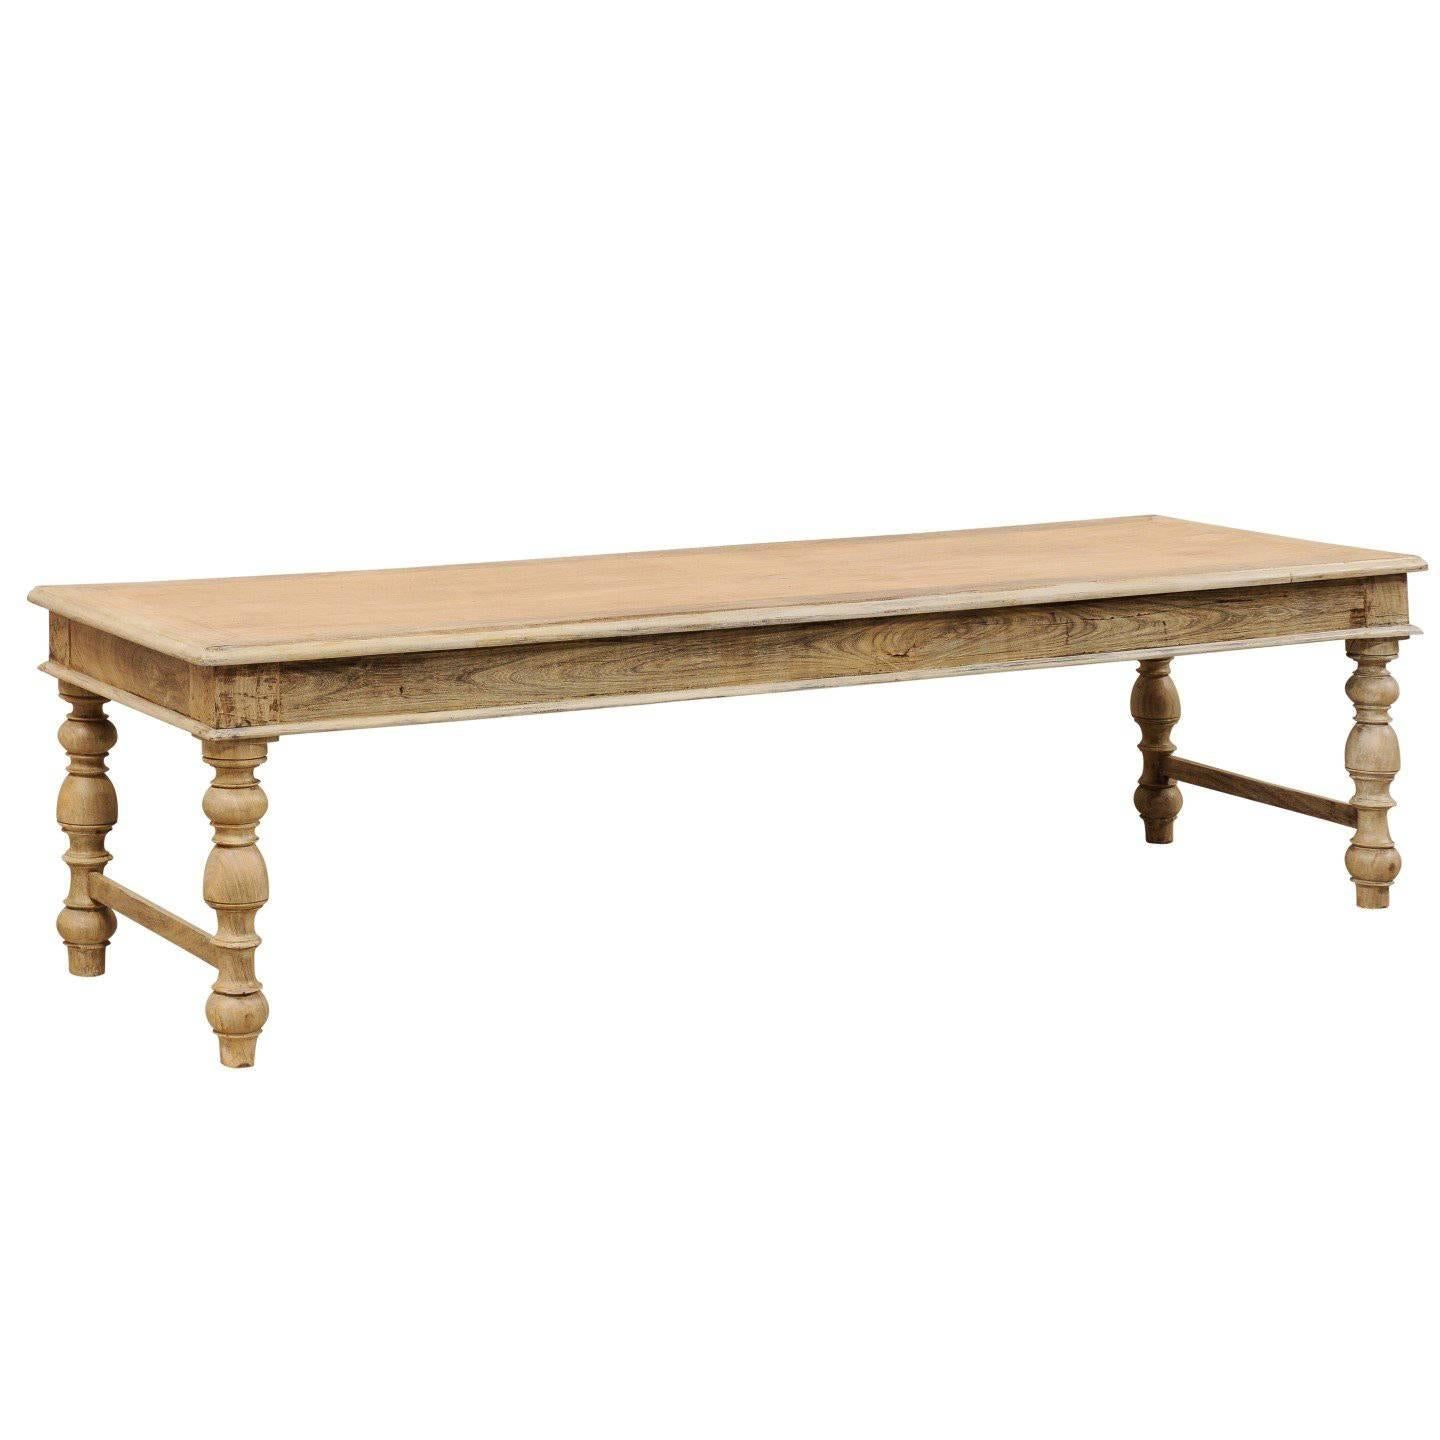 Table basse ou table d'appoint belge du milieu du 20e siècle en bois pâle avec pieds tournés